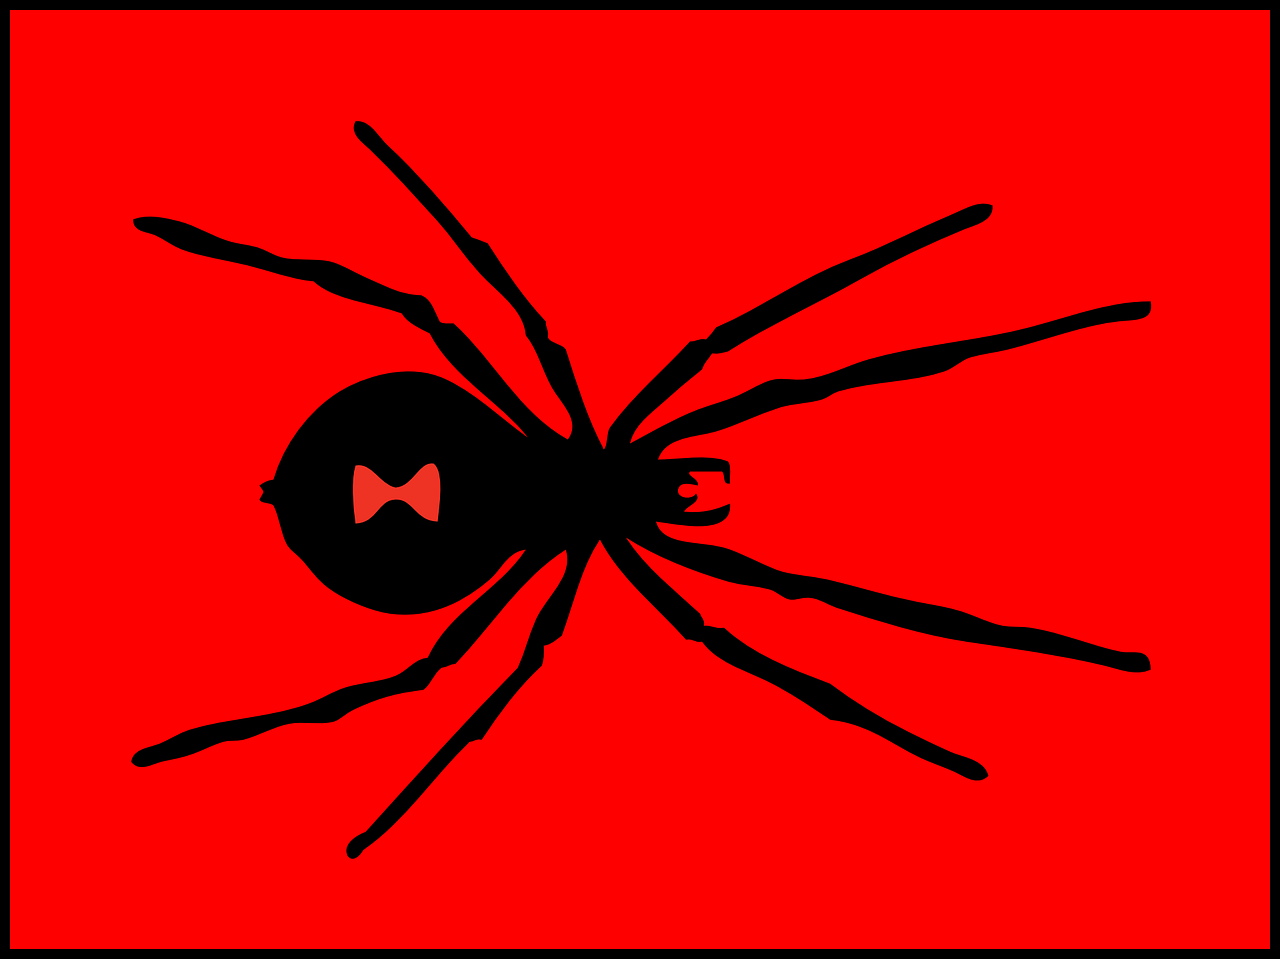 صور لـ سام حشرة سام أحمر عنكبوت